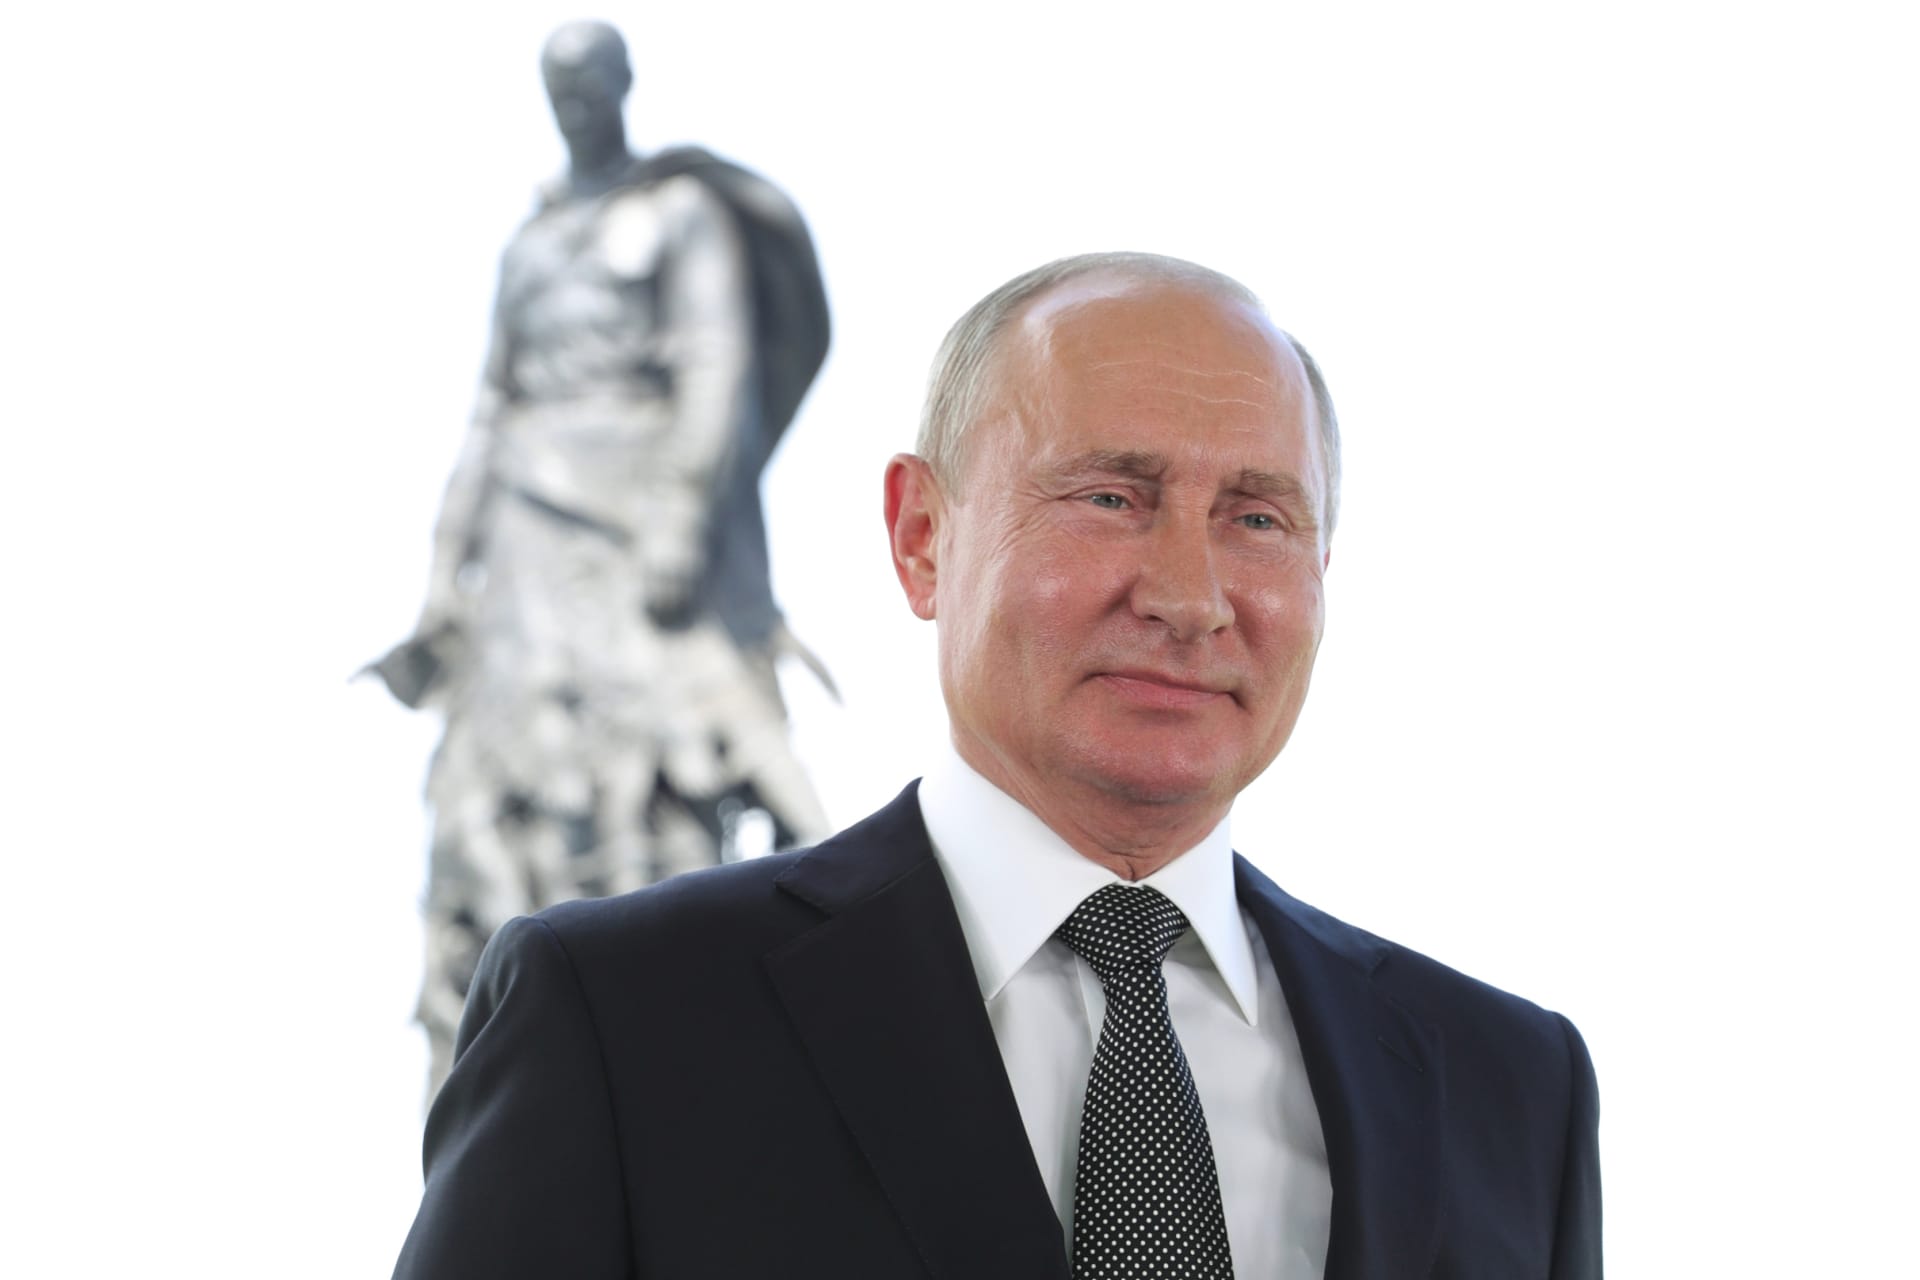 بوتين يدعو الروس للتصويت على تعديلات دستورية تسمح باستمراره في الحكم حتى 2036